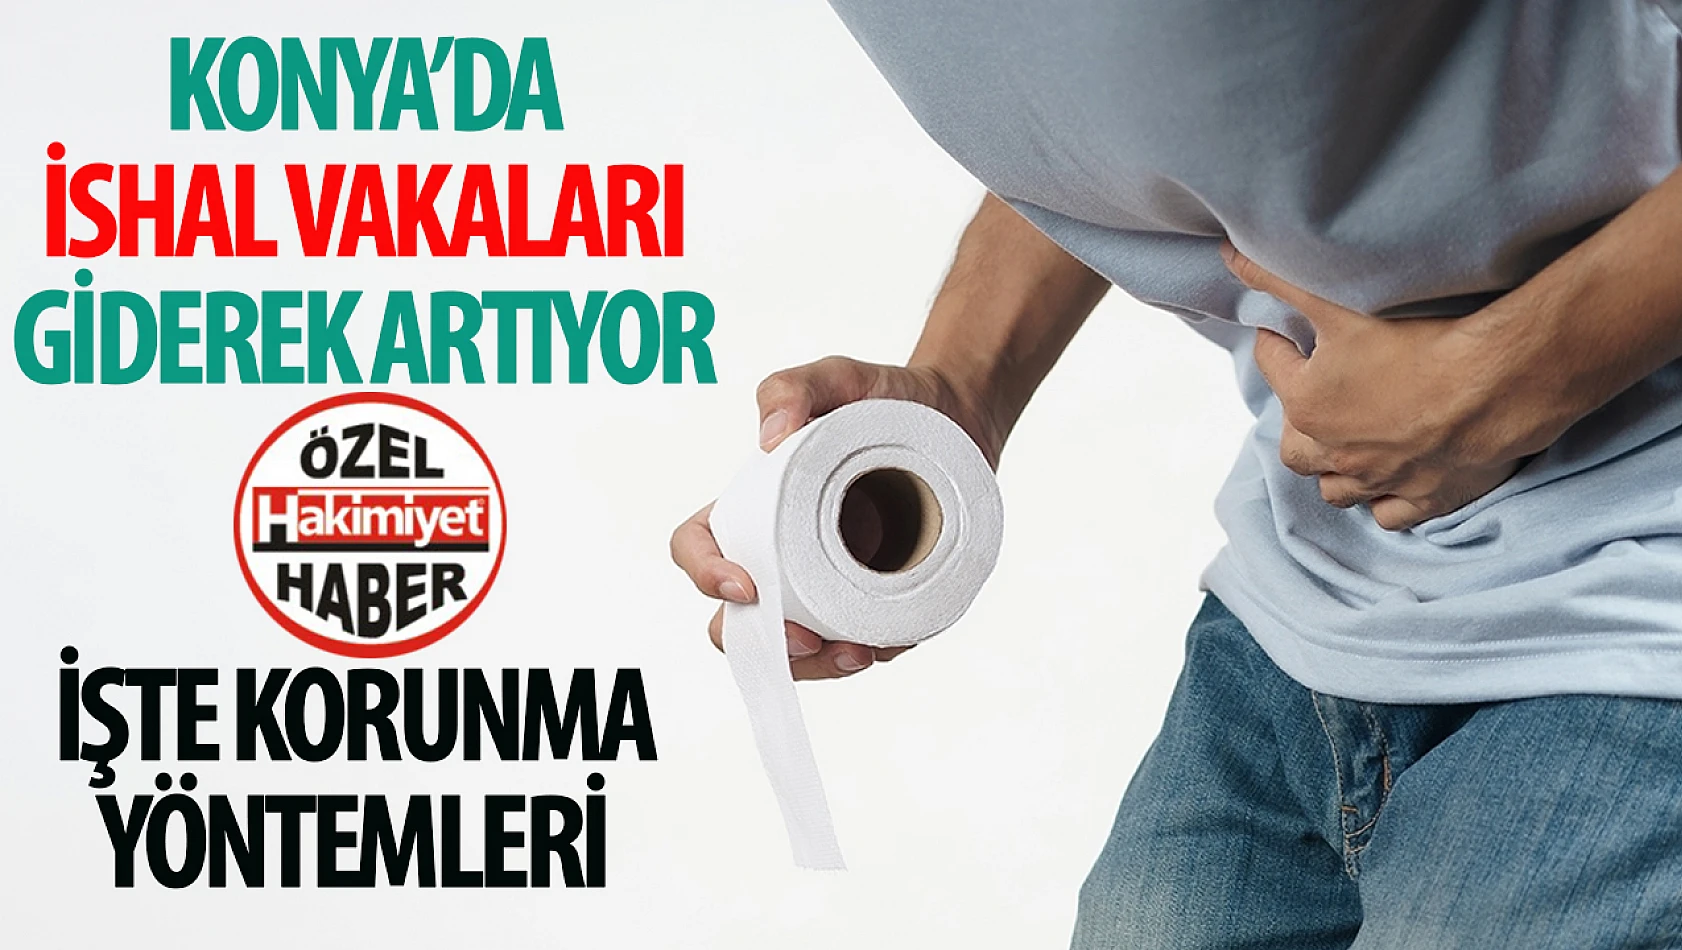  Konya'da İshal Vakalarında Artış: Sağlıklı Yaşam İçin Önlemler